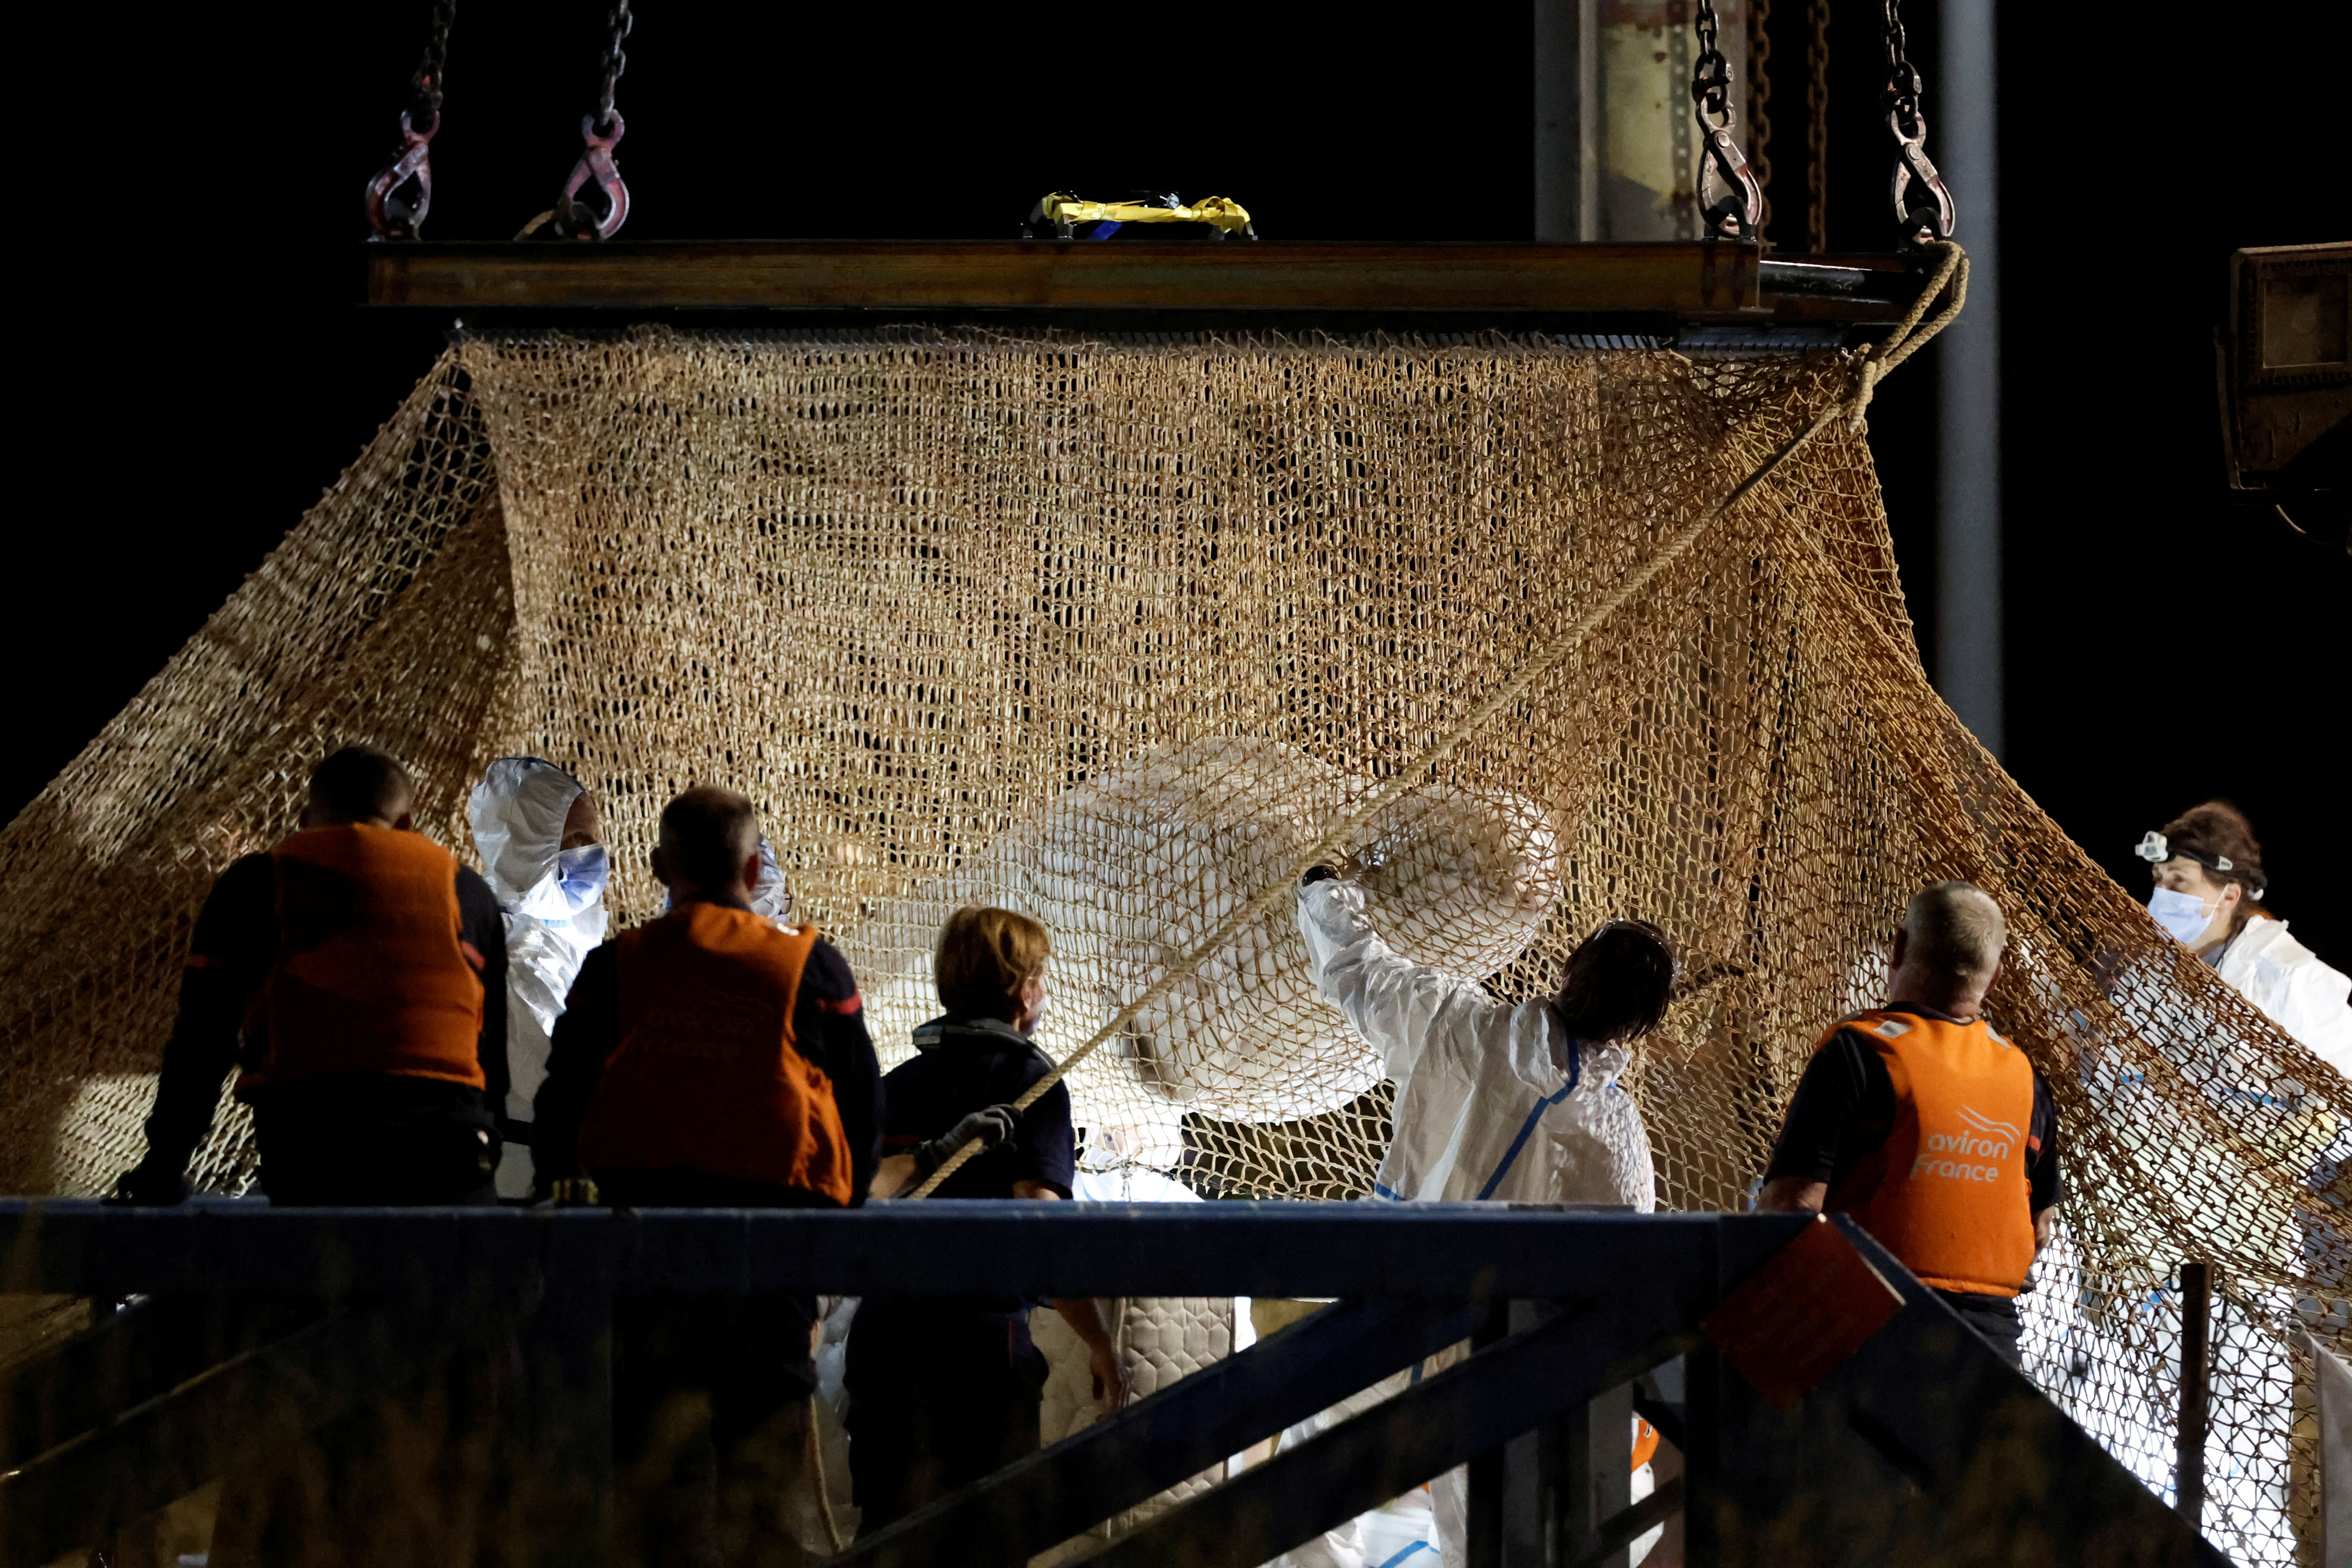 Bomberos y miembros de un equipo de búsqueda revisan a la beluga rescatada en Saint-Pierre-la-Garenne, Francia, el 10 de agosto de 2022 (REUTERS/Benoit Tessier)